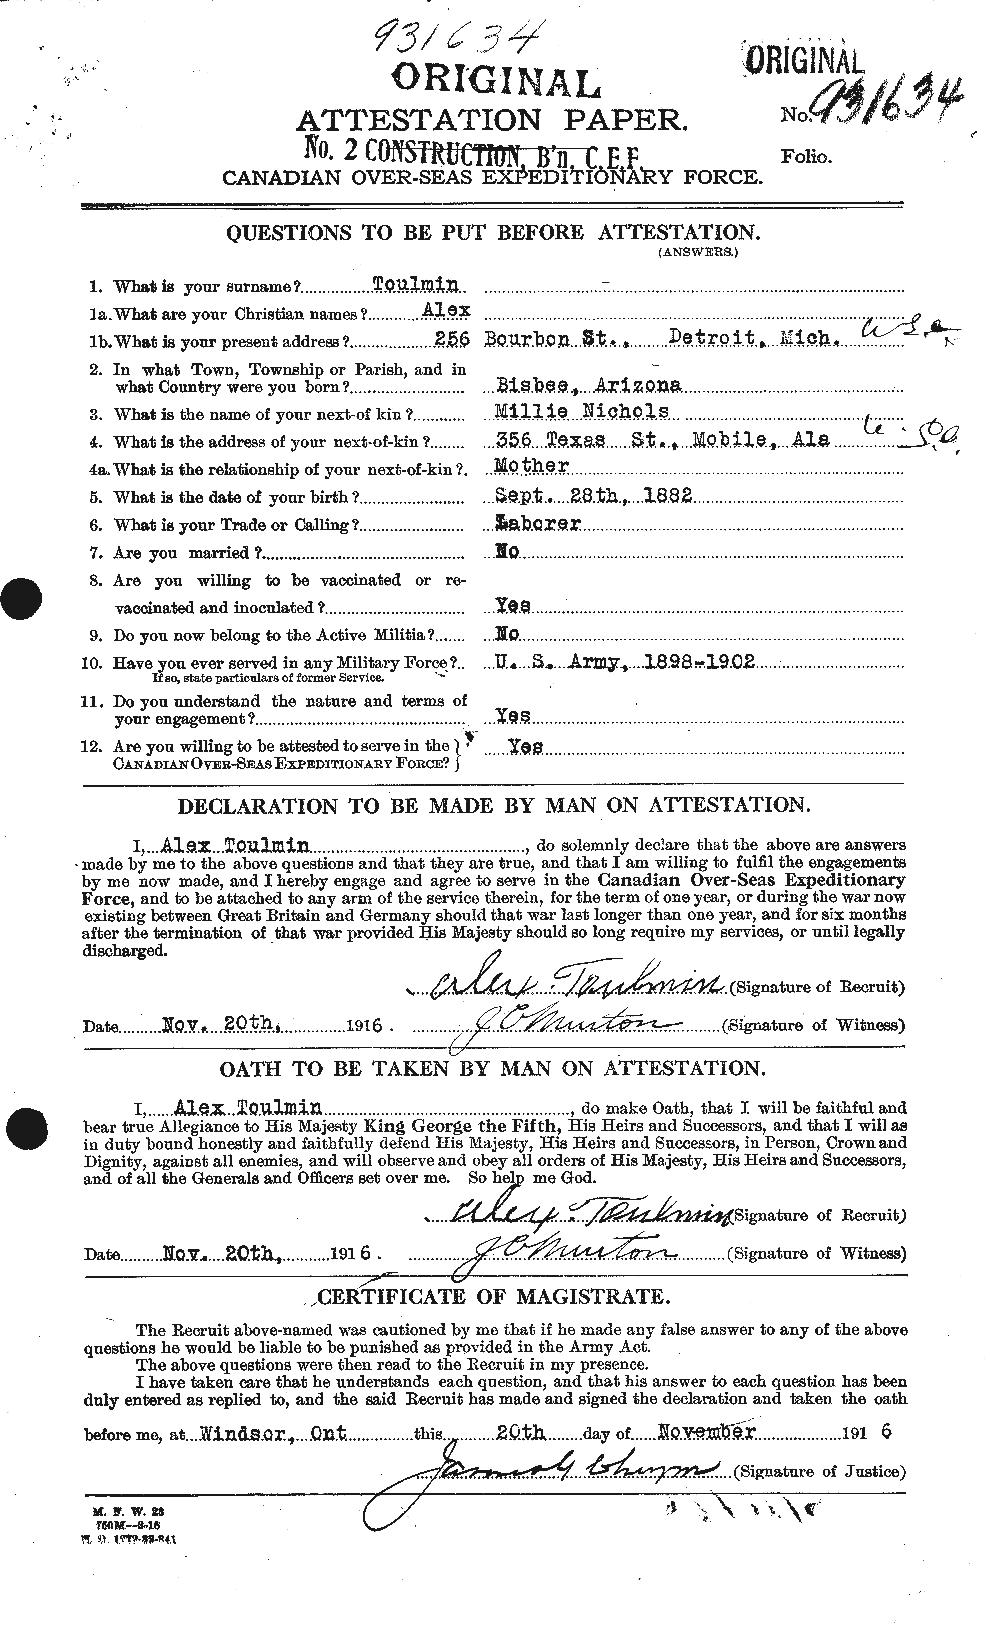 Dossiers du Personnel de la Première Guerre mondiale - CEC 650180a